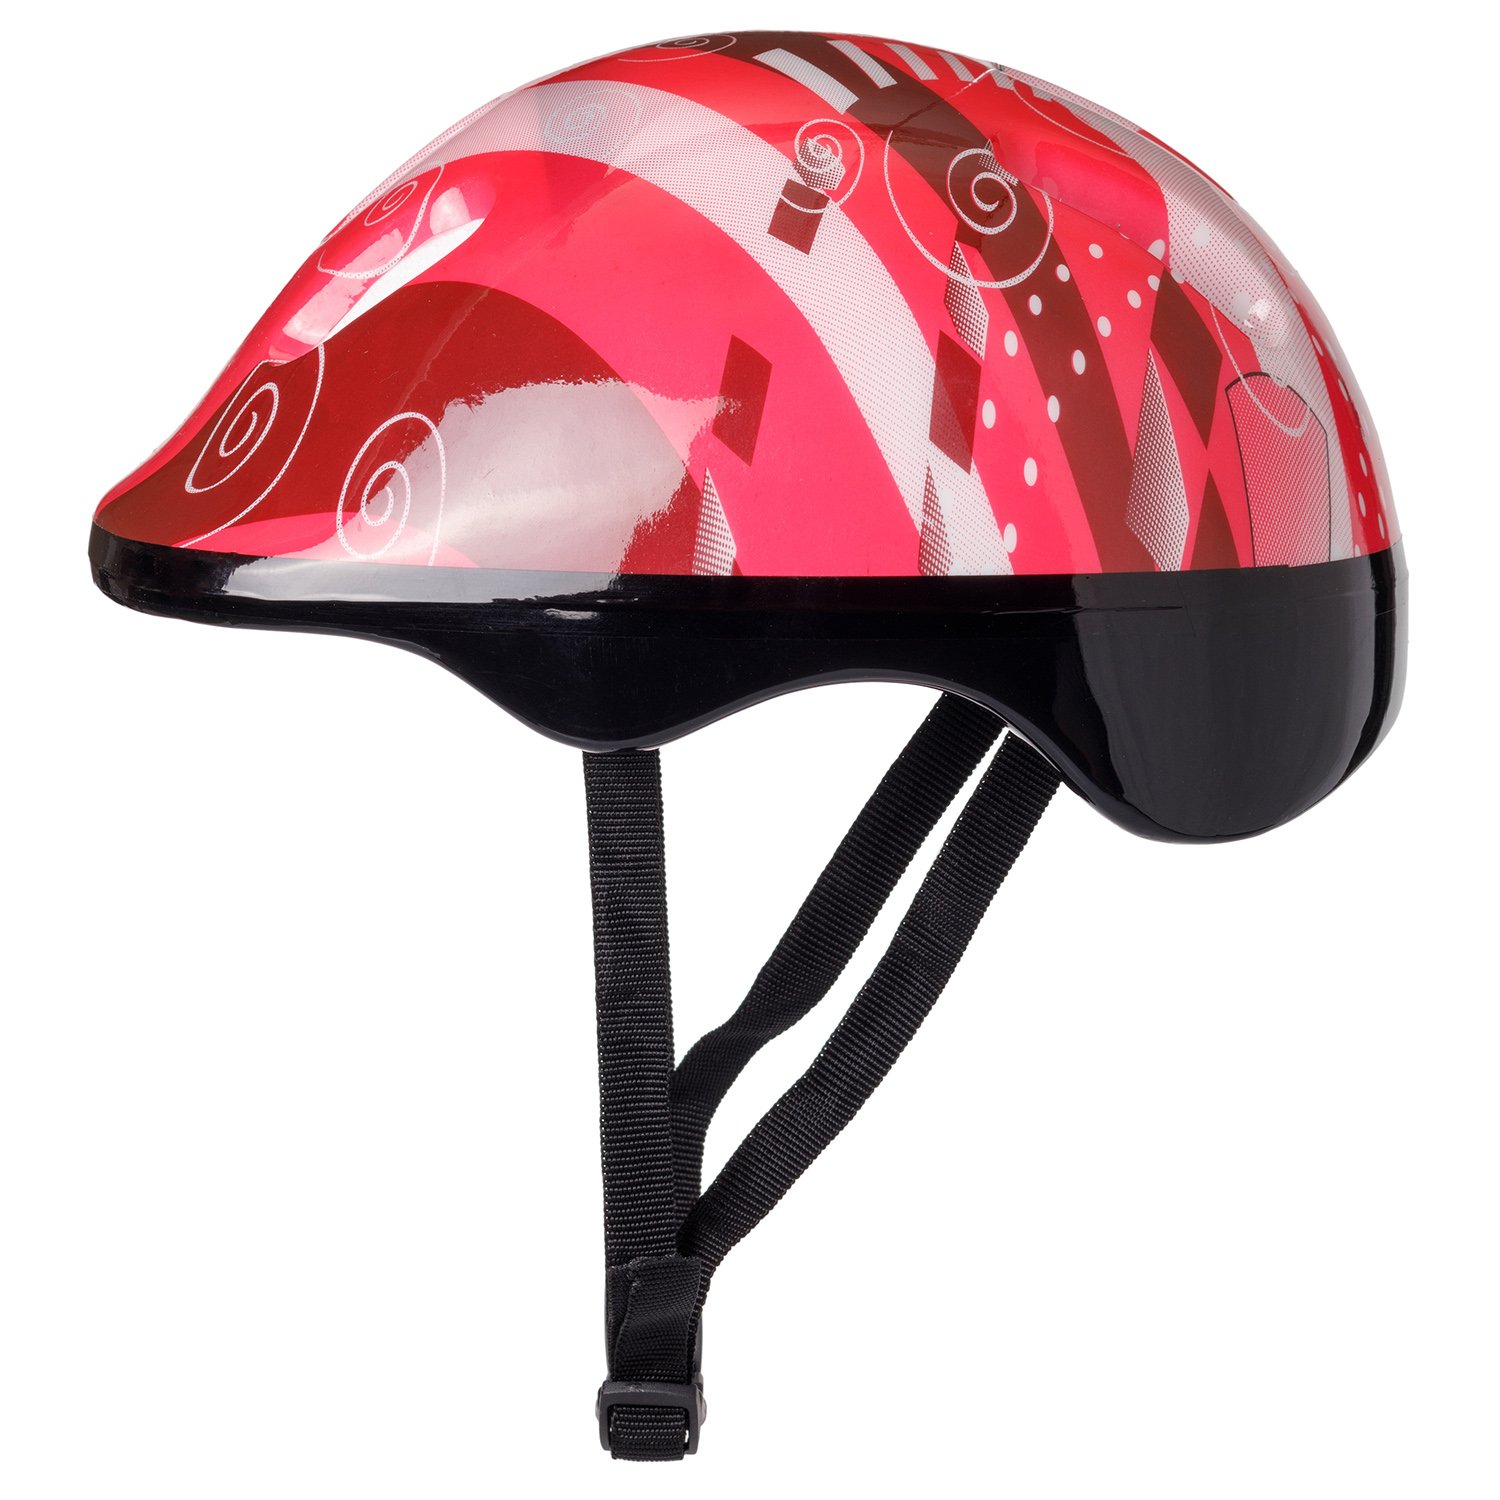  Шлем BABY STYLE для роликовых коньков красный Обхват 57 см .